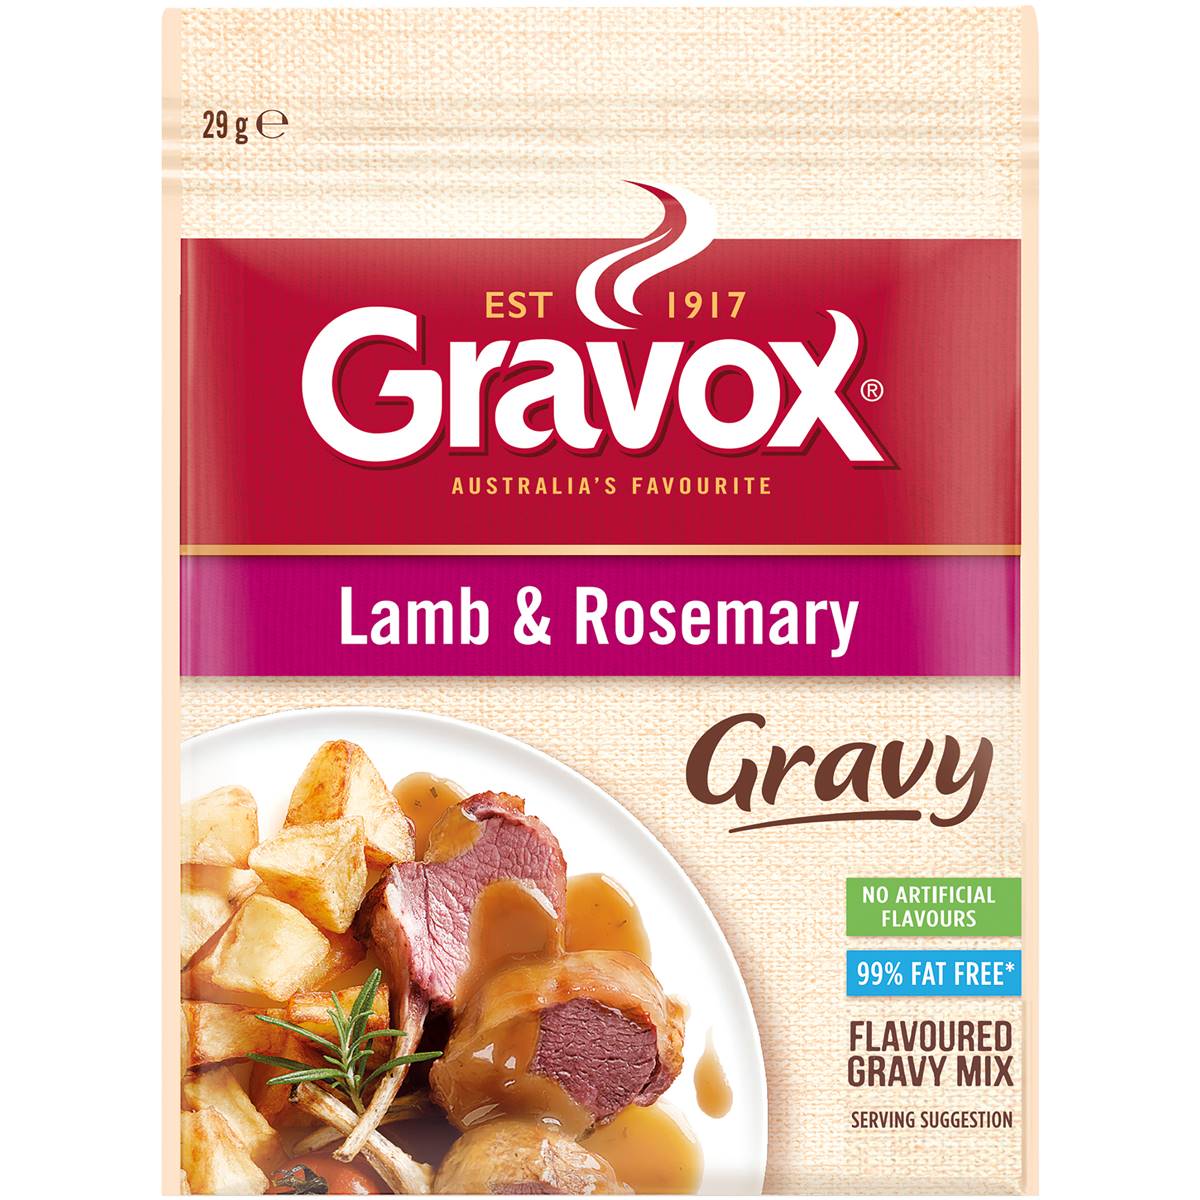 Gravox Gravy Mix Lamb & Rosemary